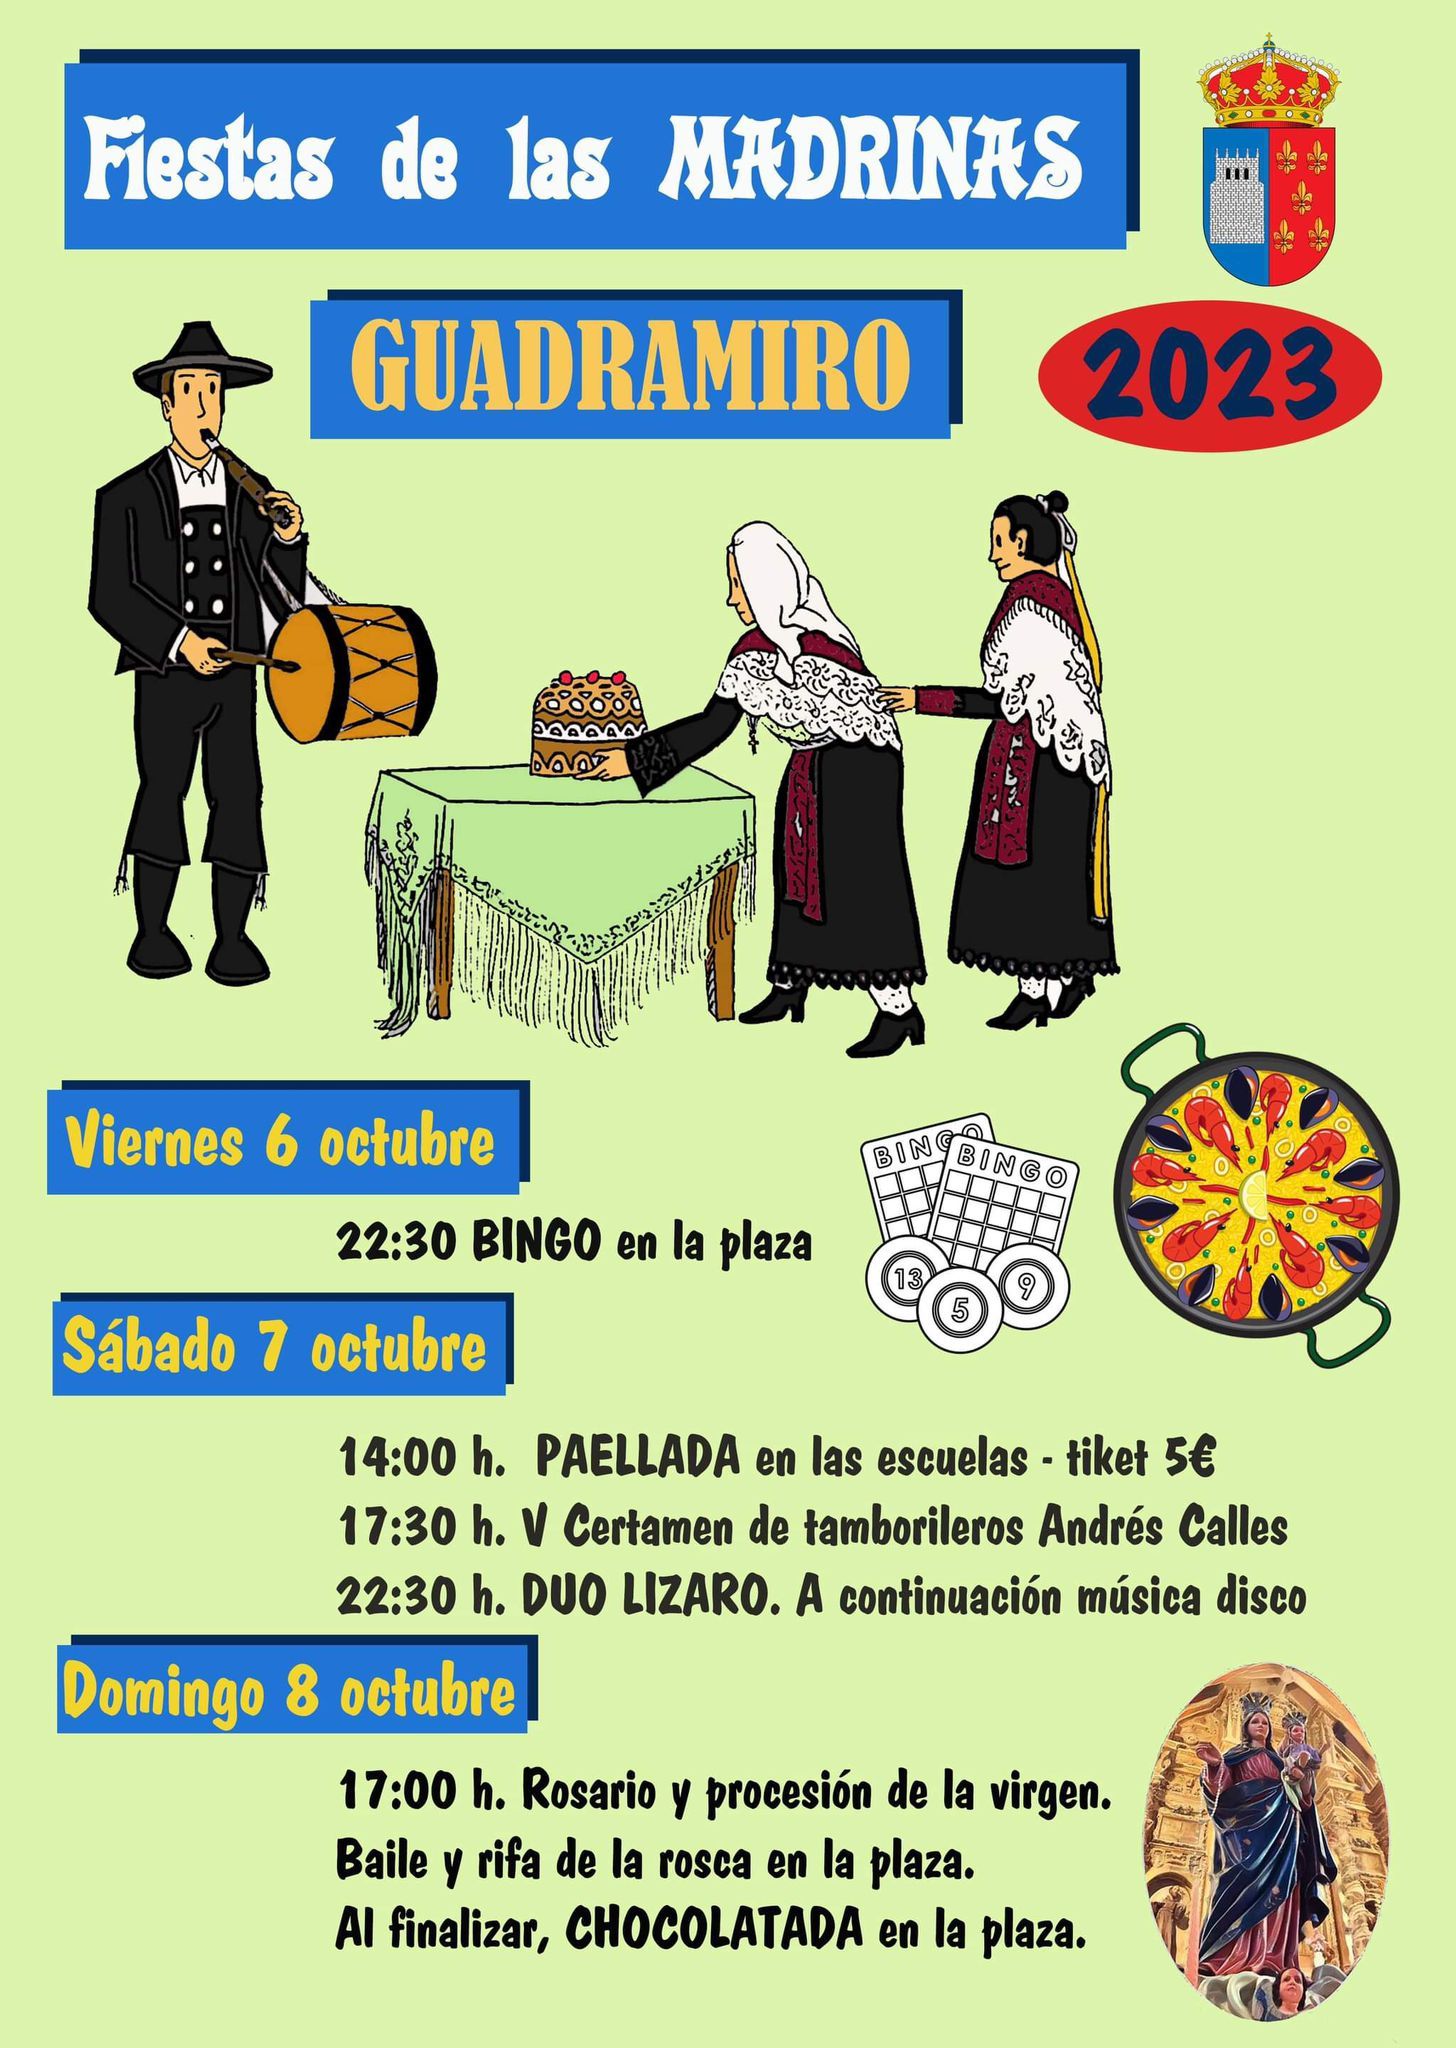 Programación de las fiestas de Las Madrinas 2023 de Guadramiro